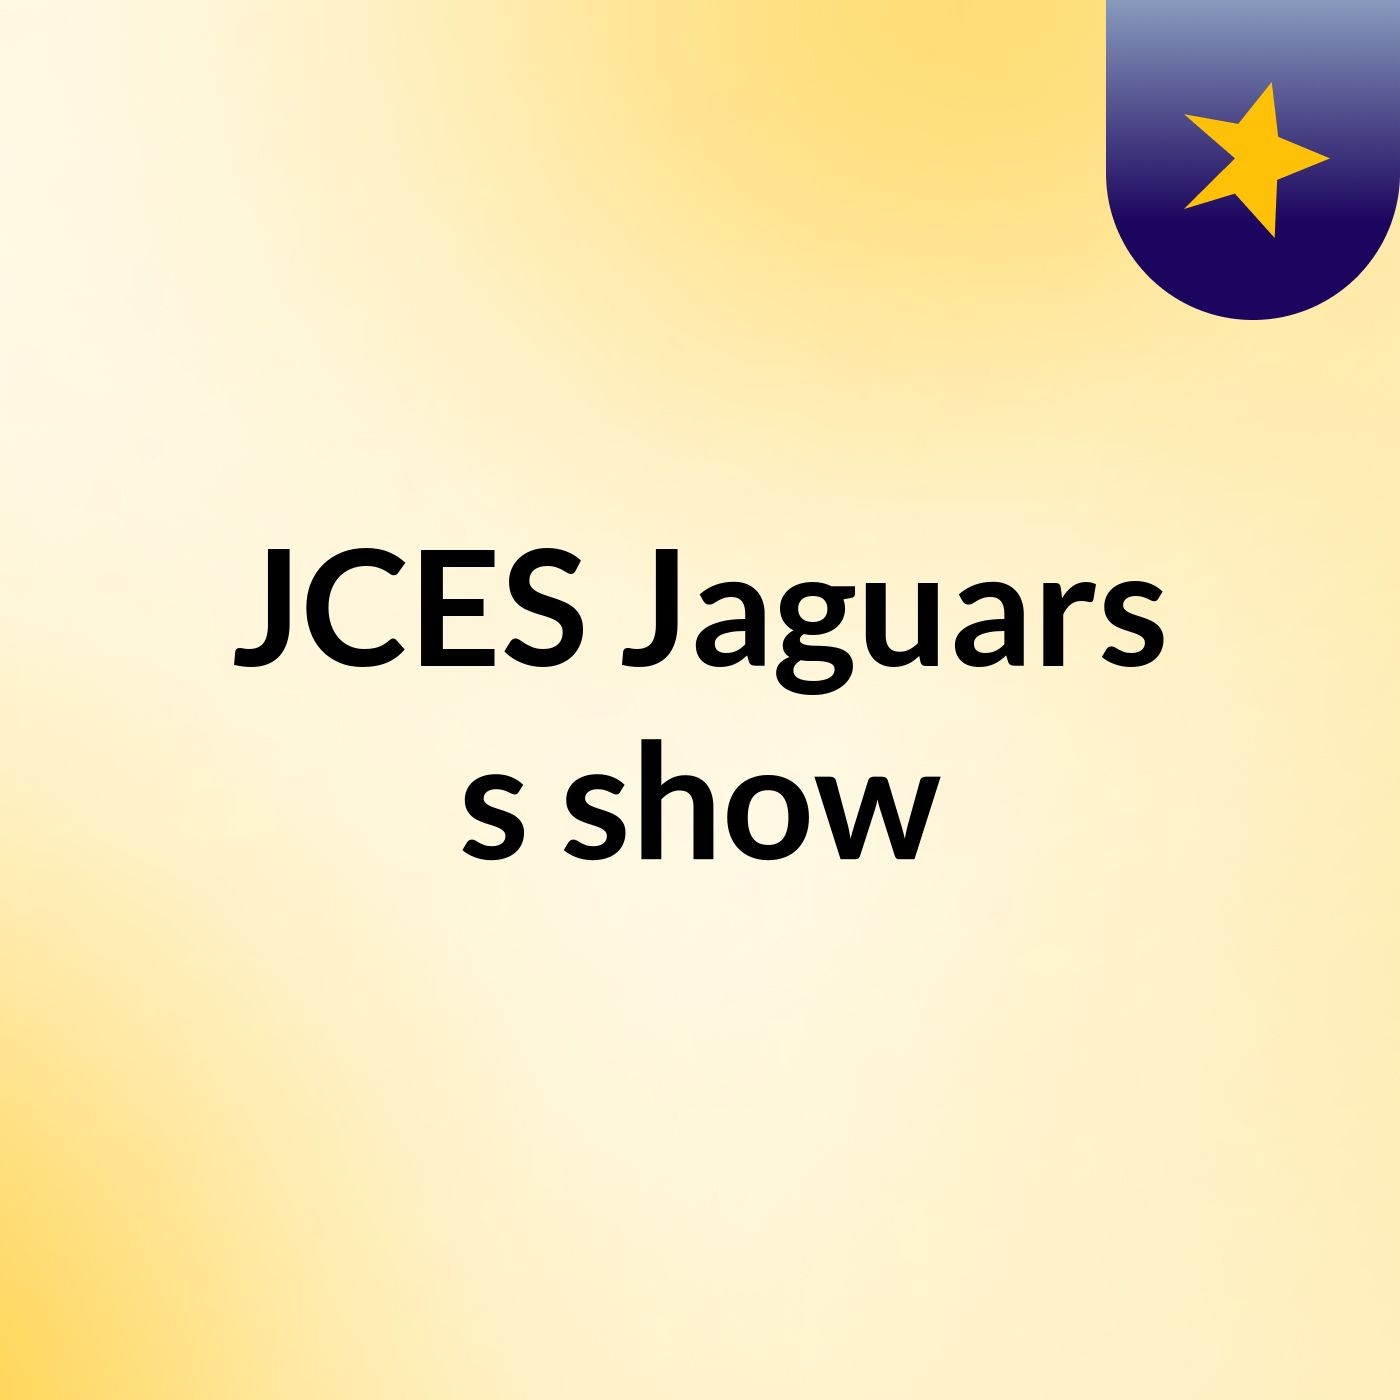 JCES Jaguars's show